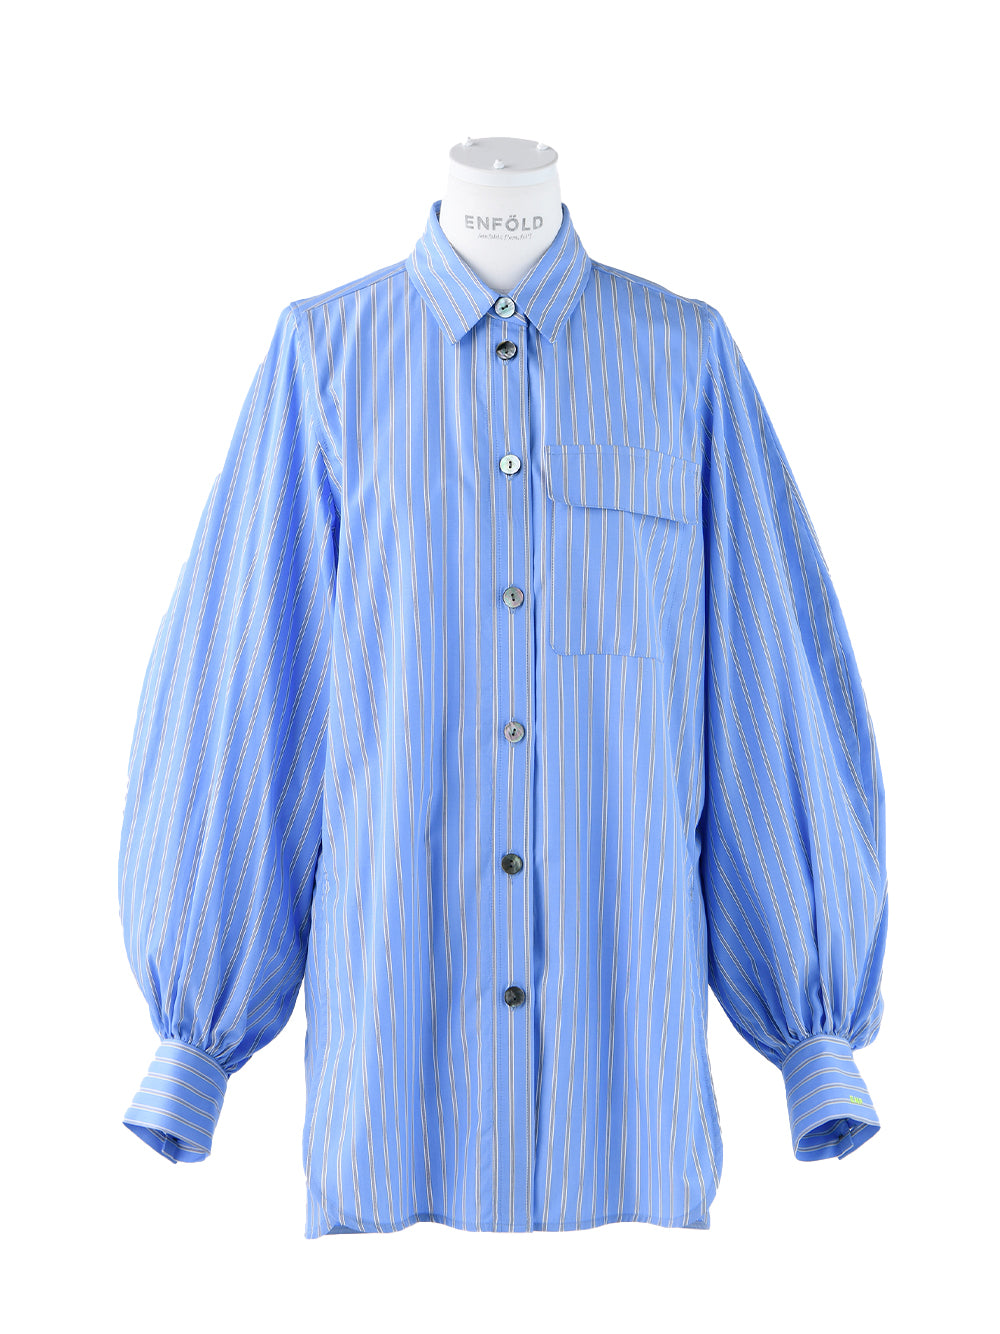 S Stripe Volume Sleeve Basic Shirt (Medium Blue)